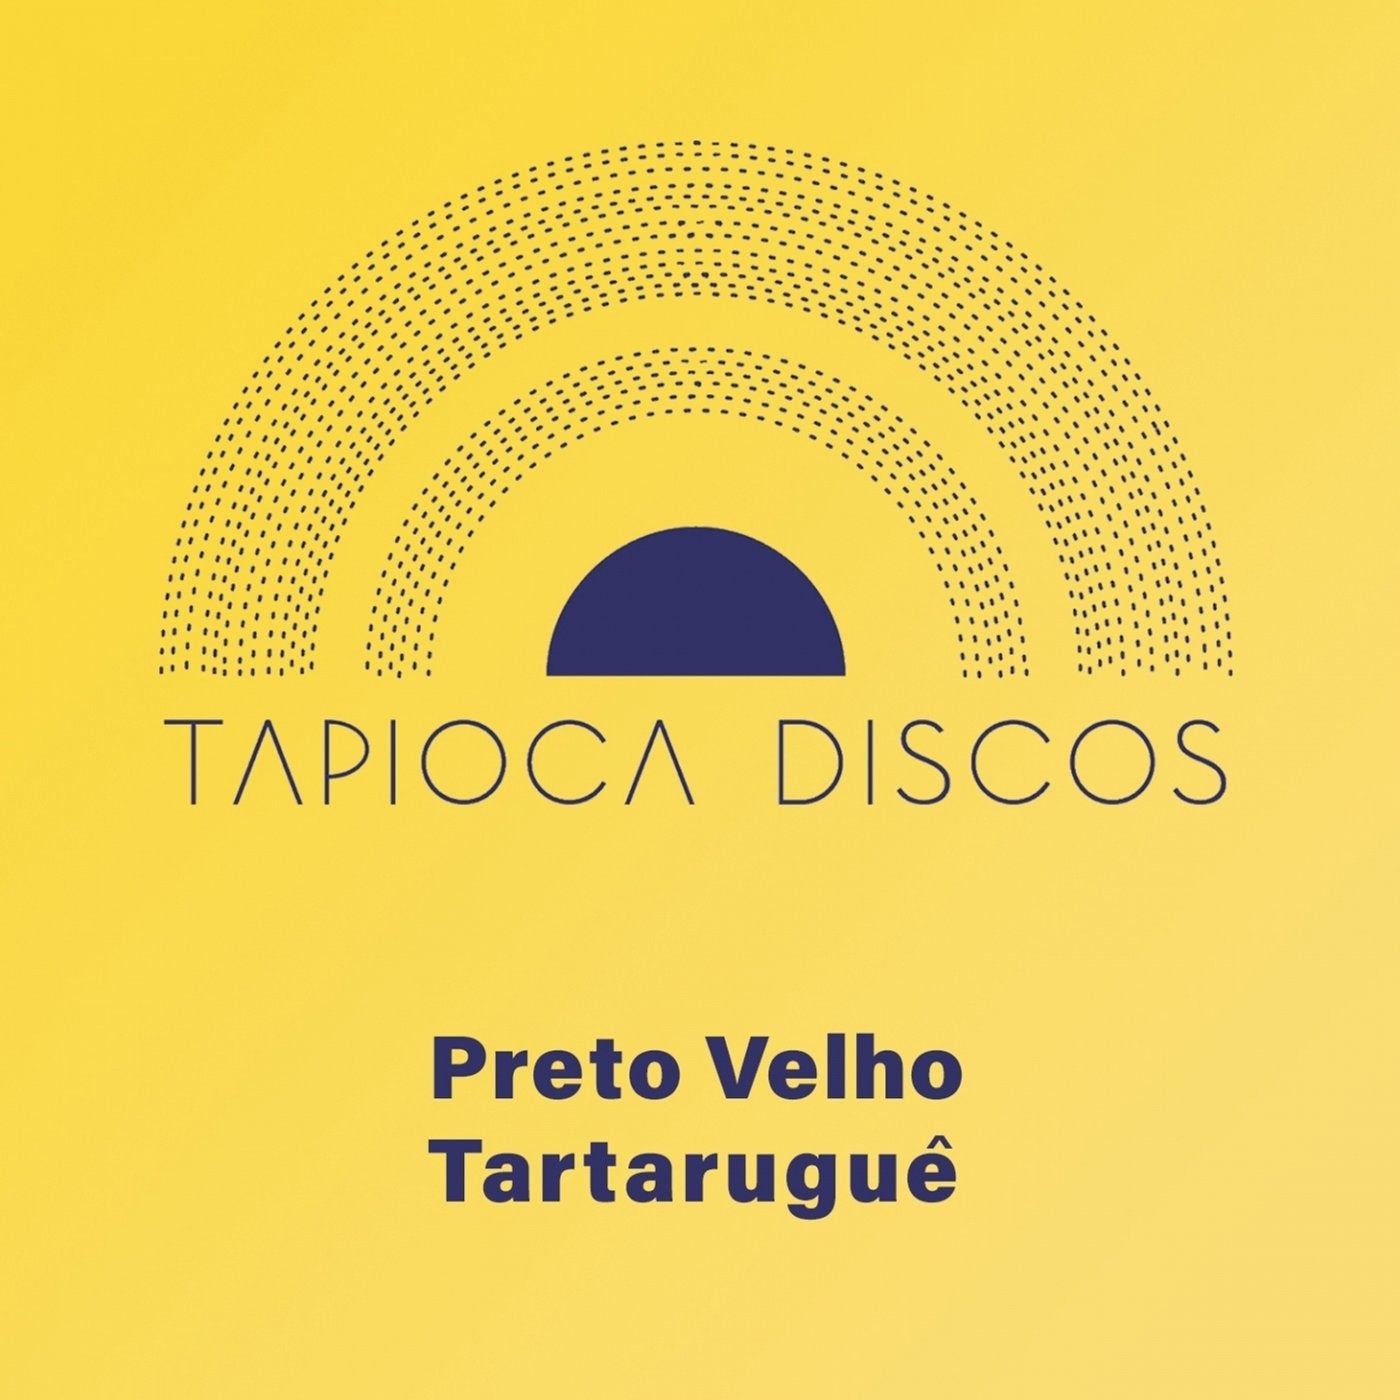 Tapioca Discos (Versao Tapioca Discos)